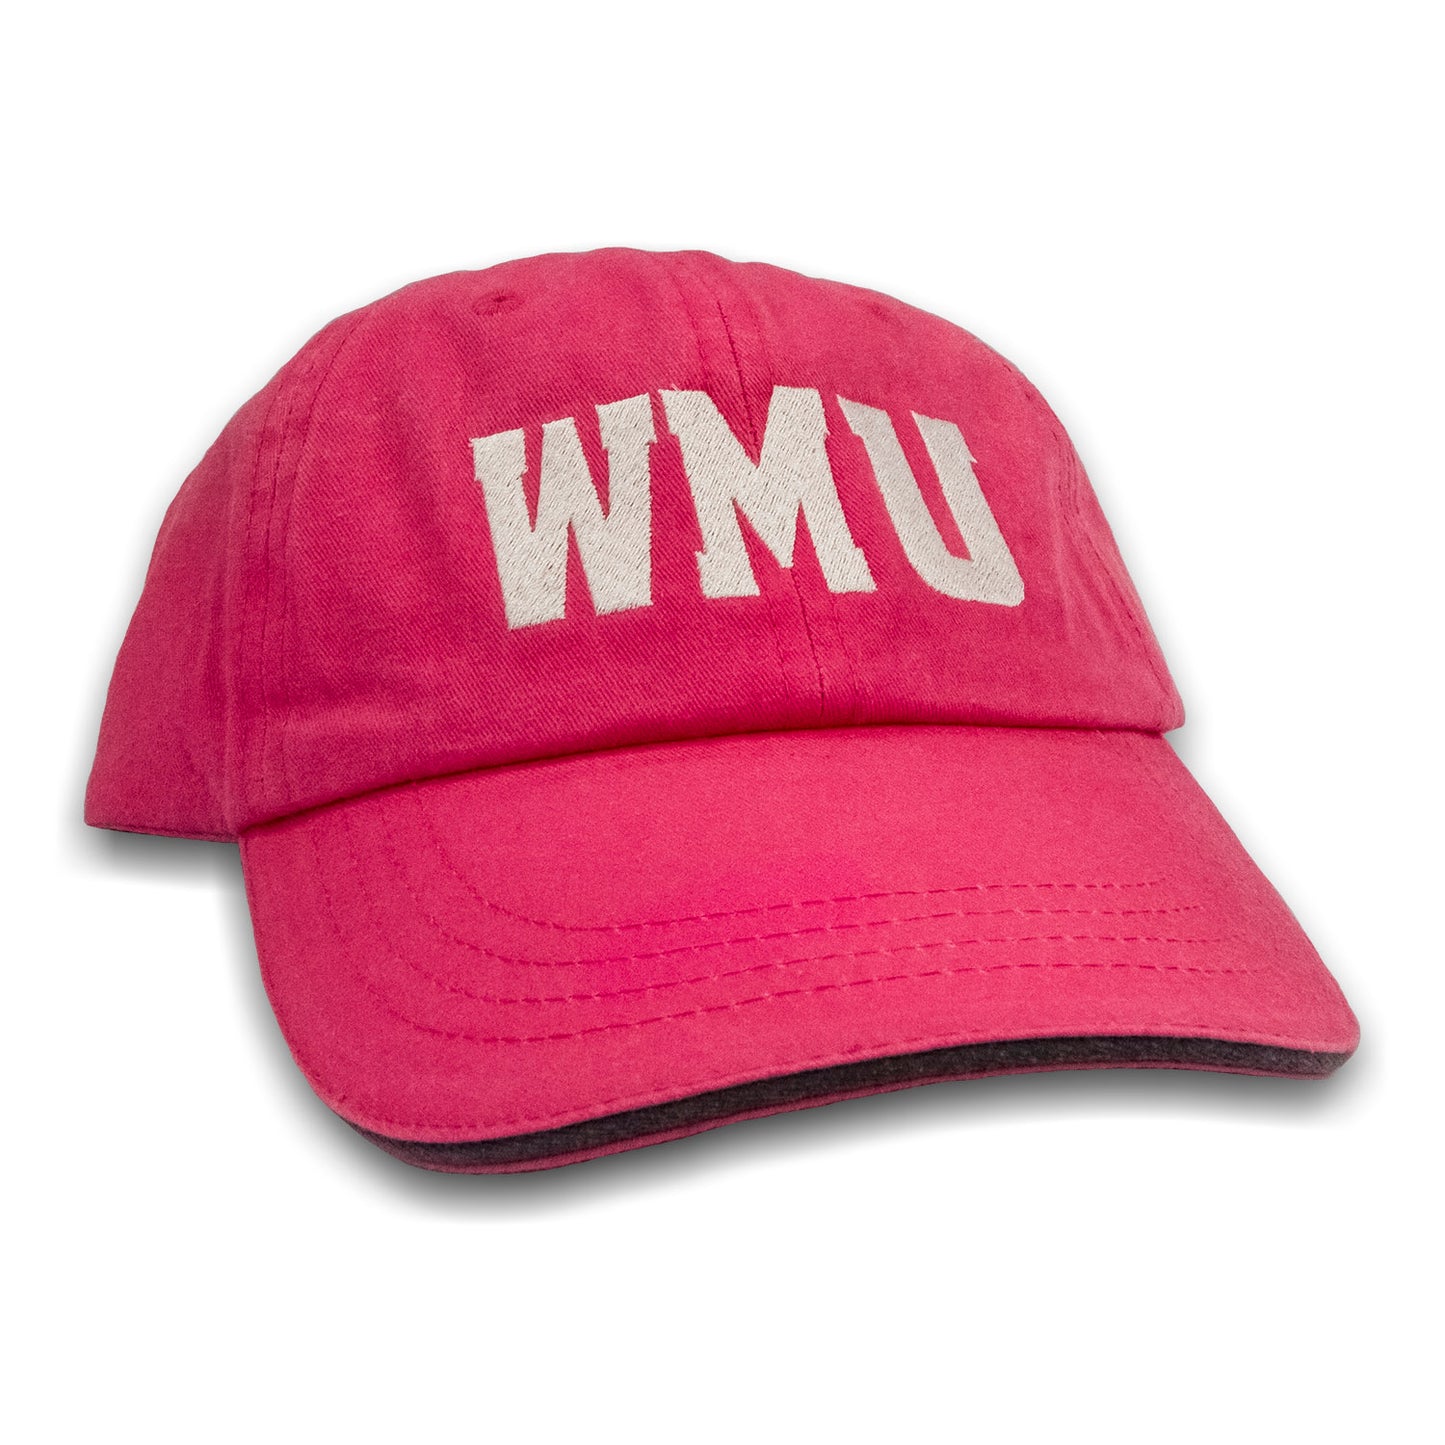 WMU Twill Baseball Cap